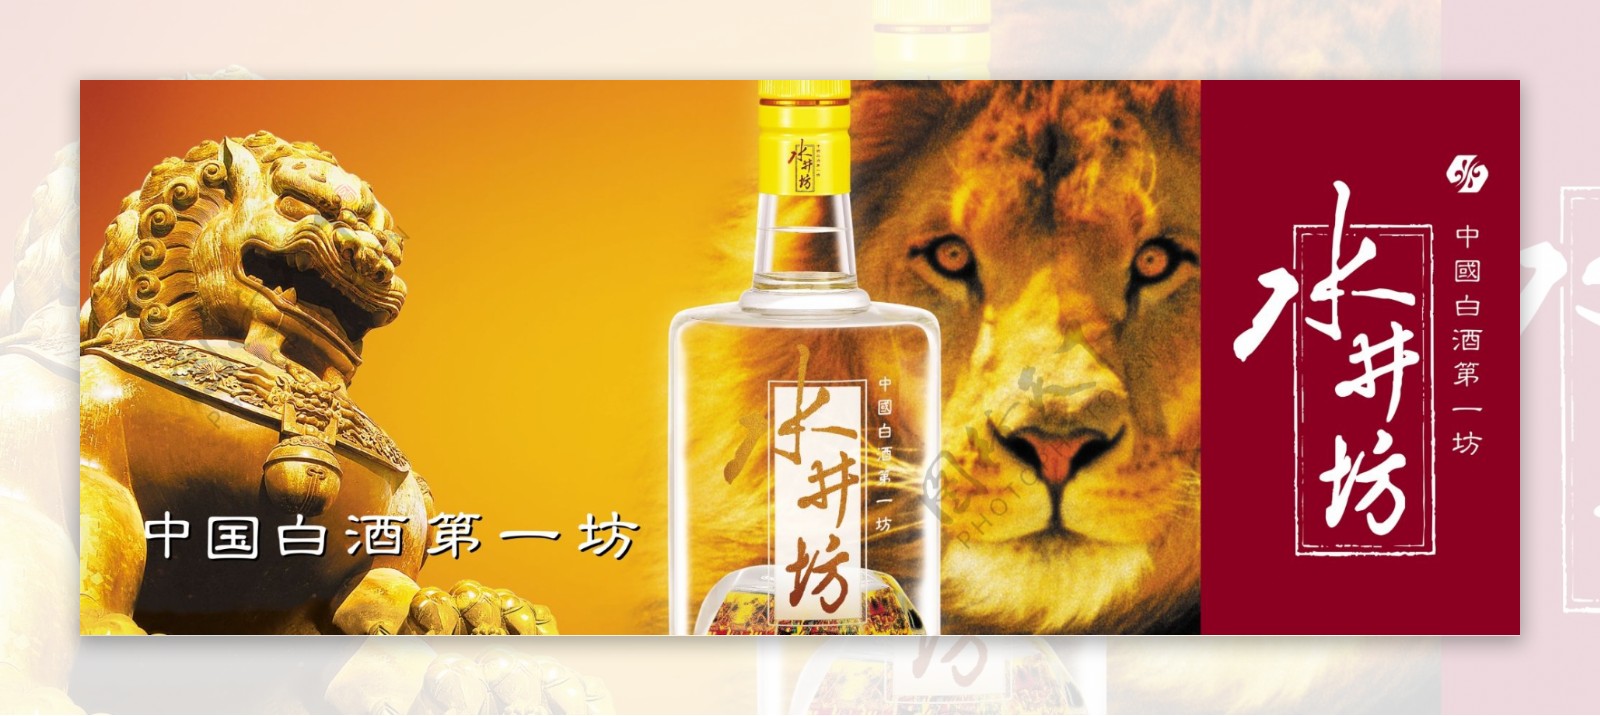 龙腾广告平面广告PSD分层素材源文件酒白酒水井坊狮子石像